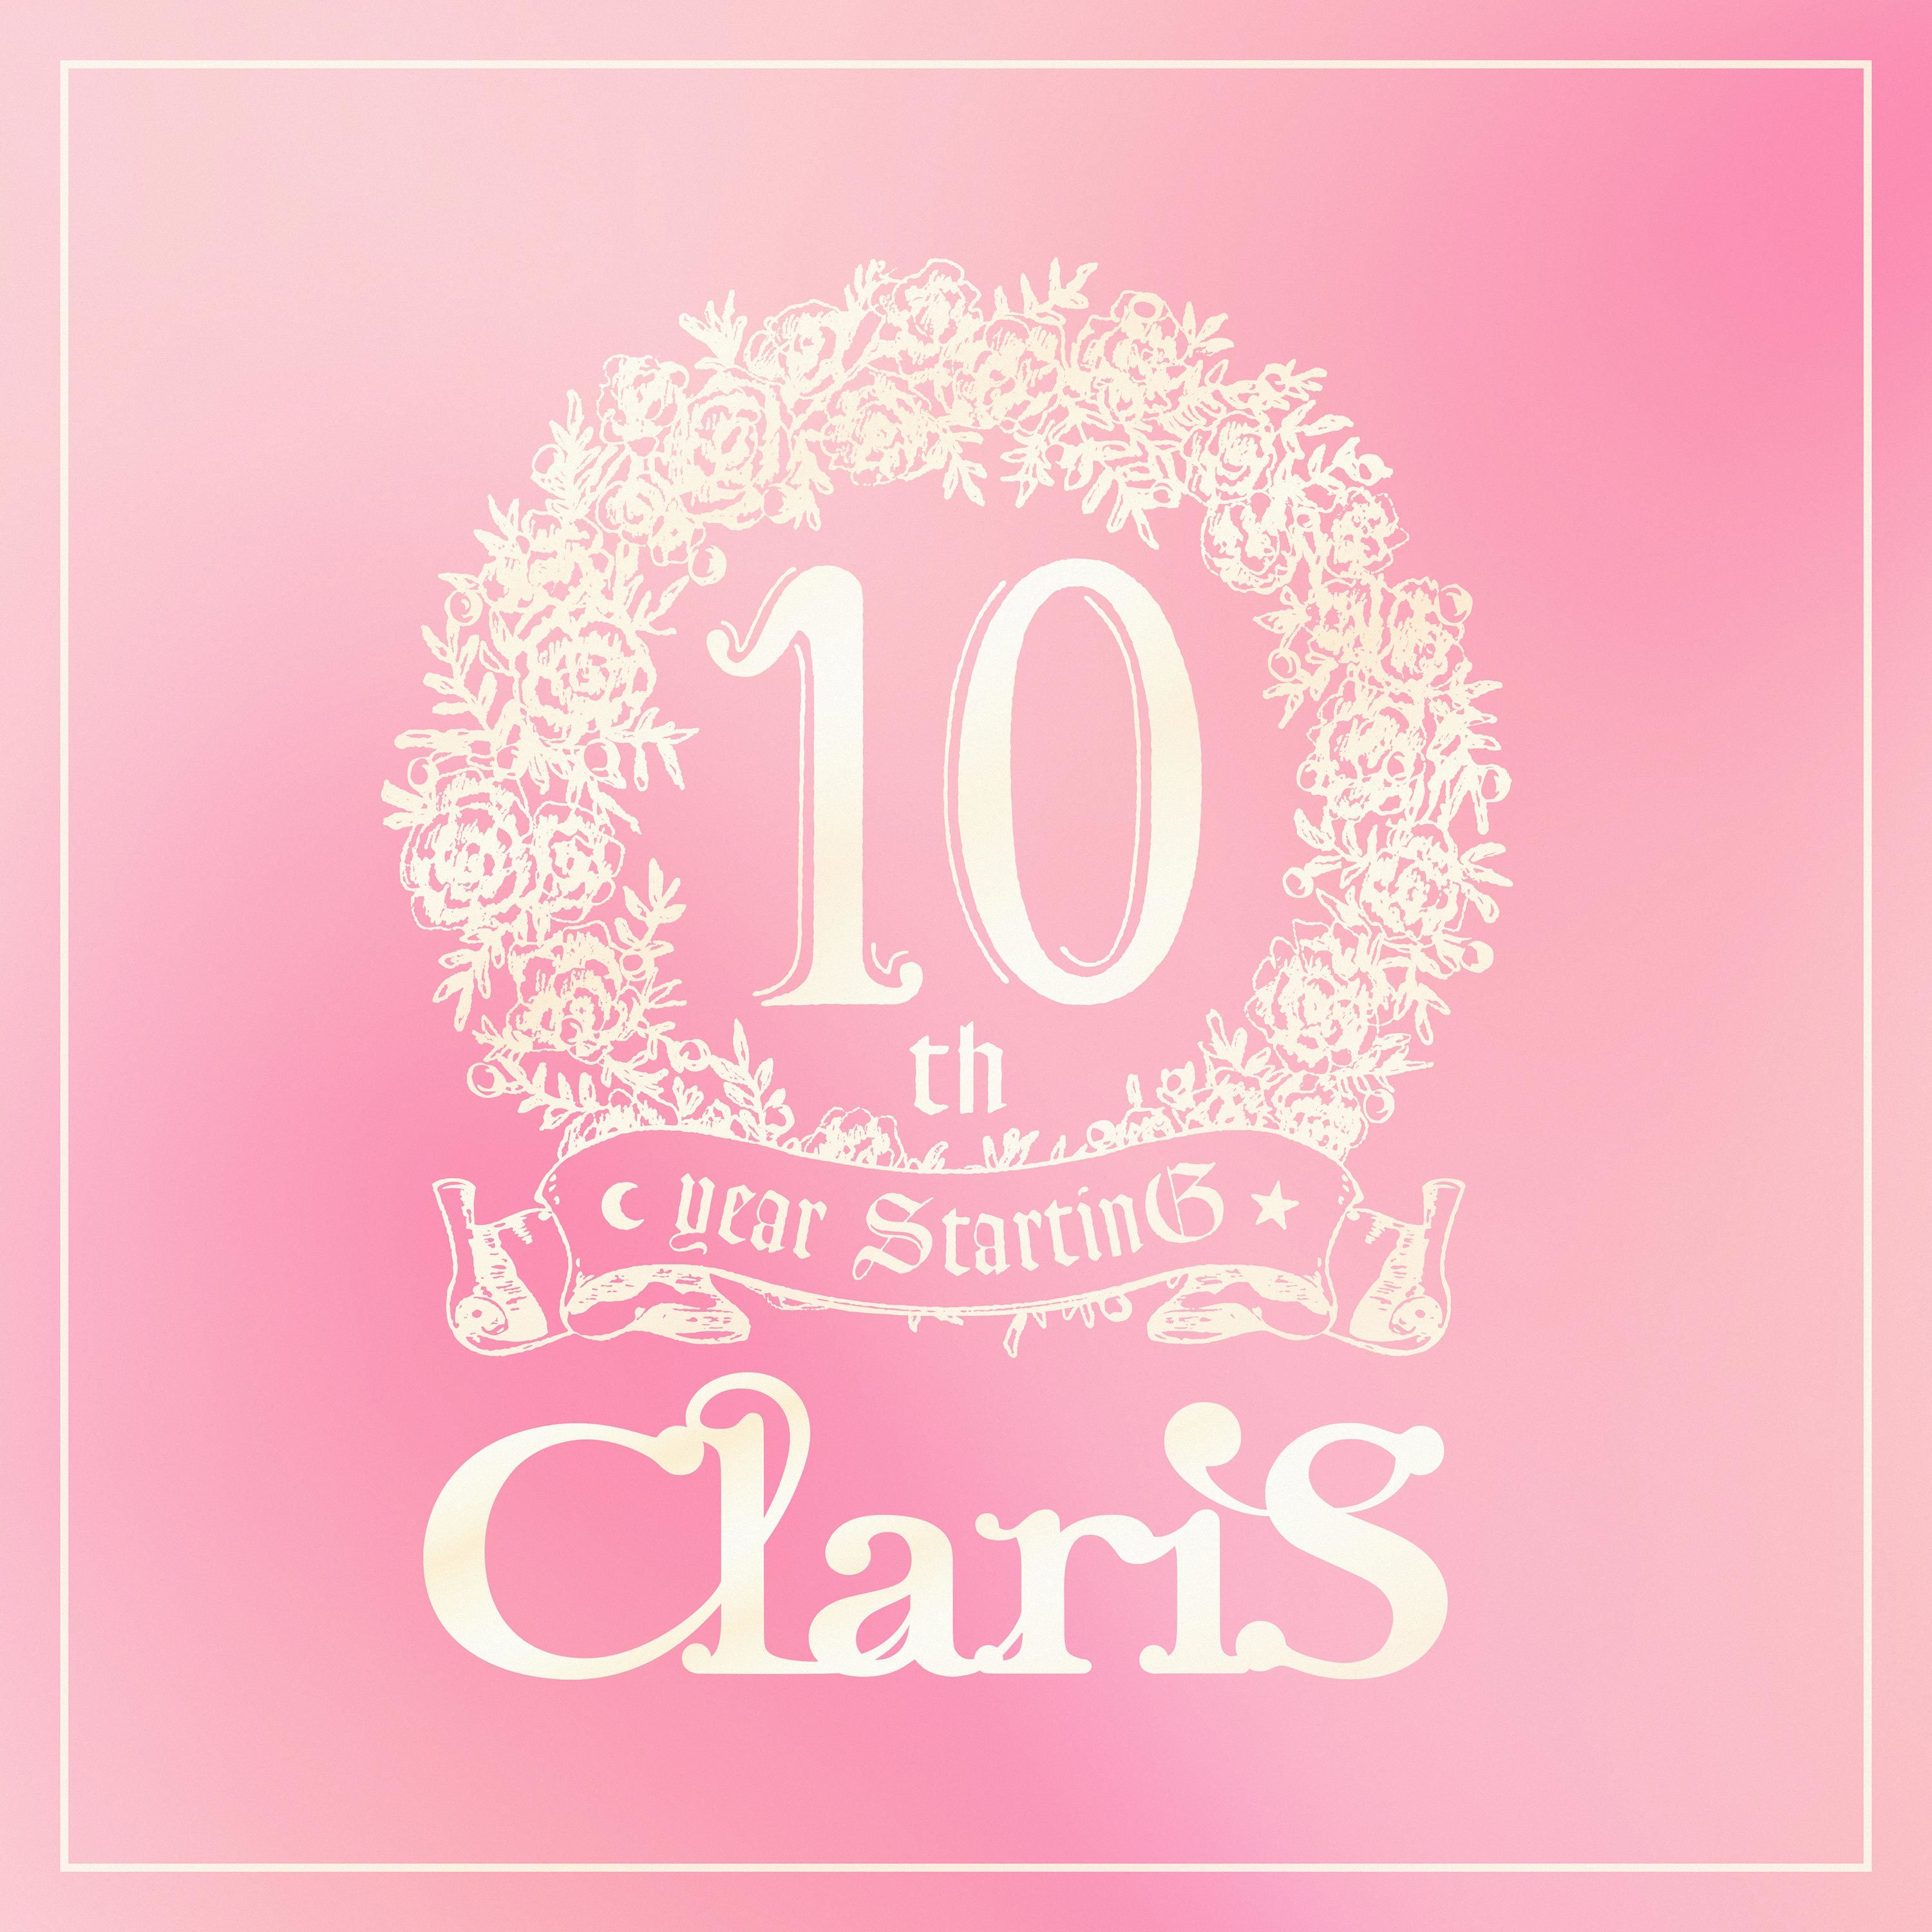 ボイスドラマ「ClariS 10th year StartinG 仮面(ペルソナ)の塔」第二弾ロゴ